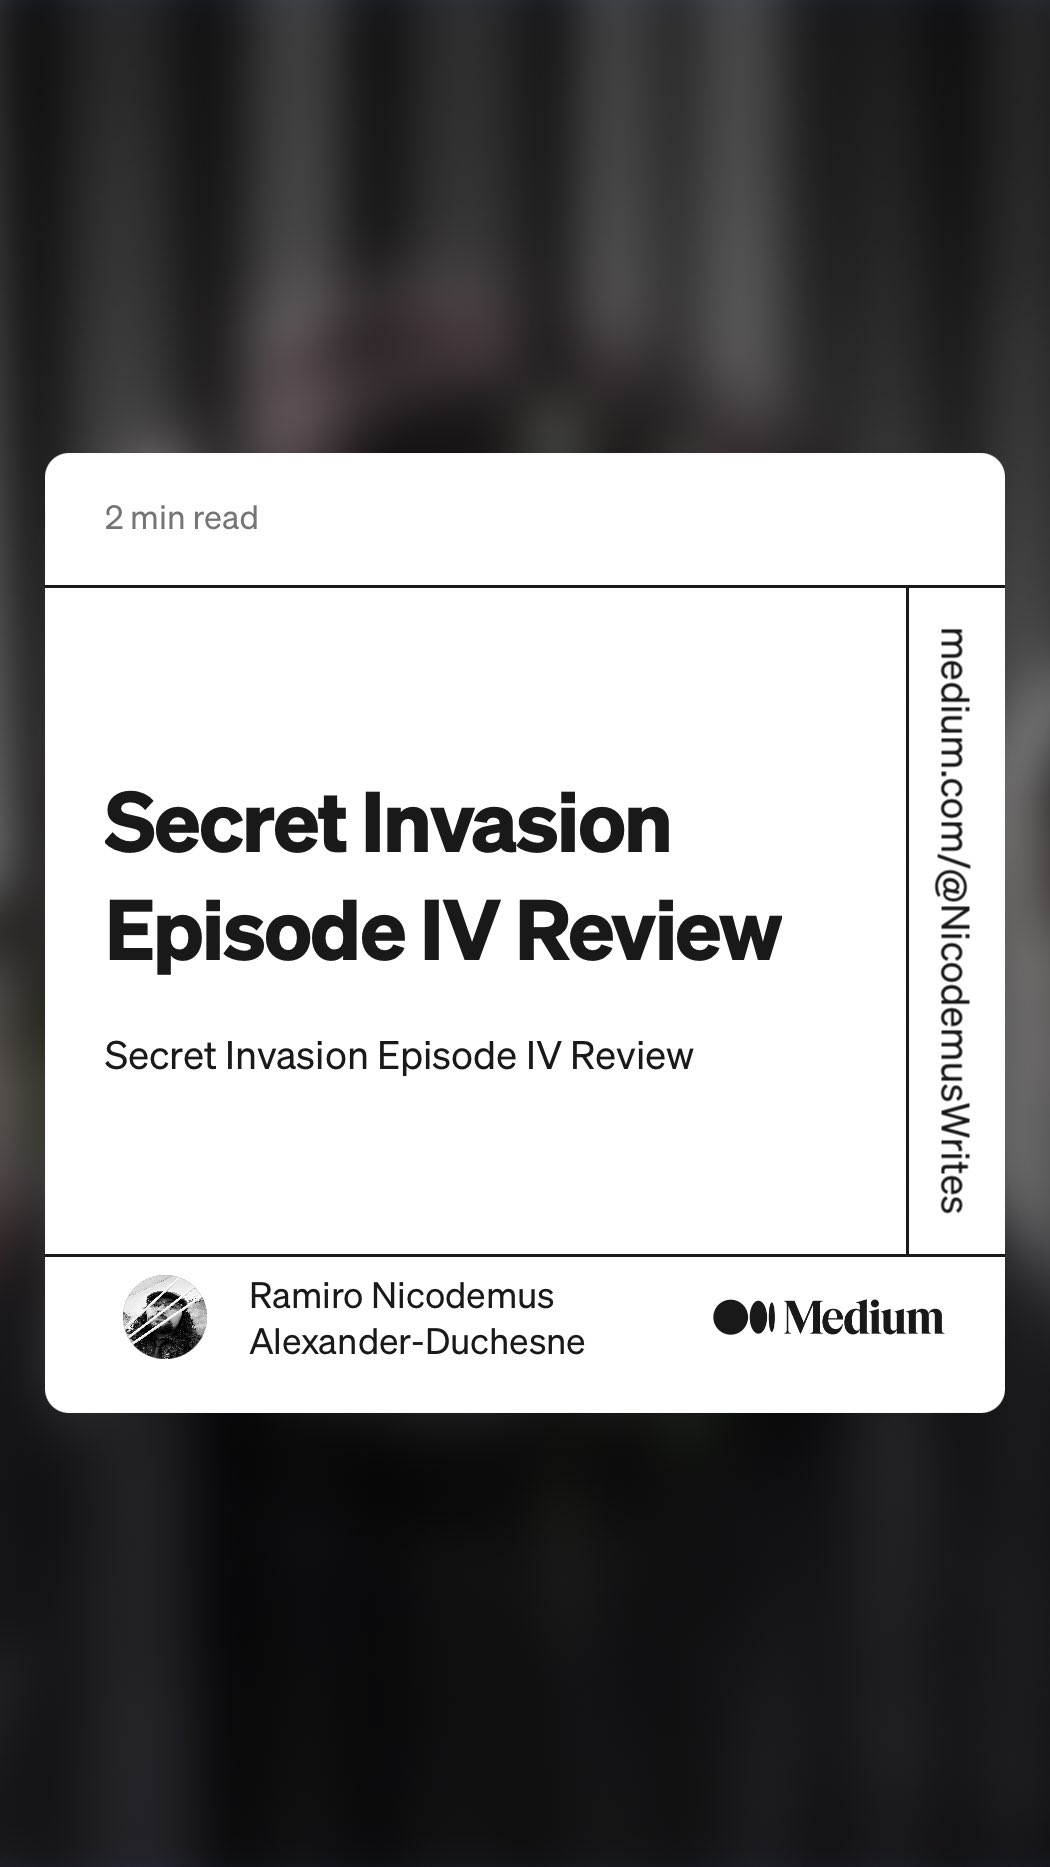 Secret Invasion Episode VI Review, by Ramiro Nicodemus Alexander-Duchesne